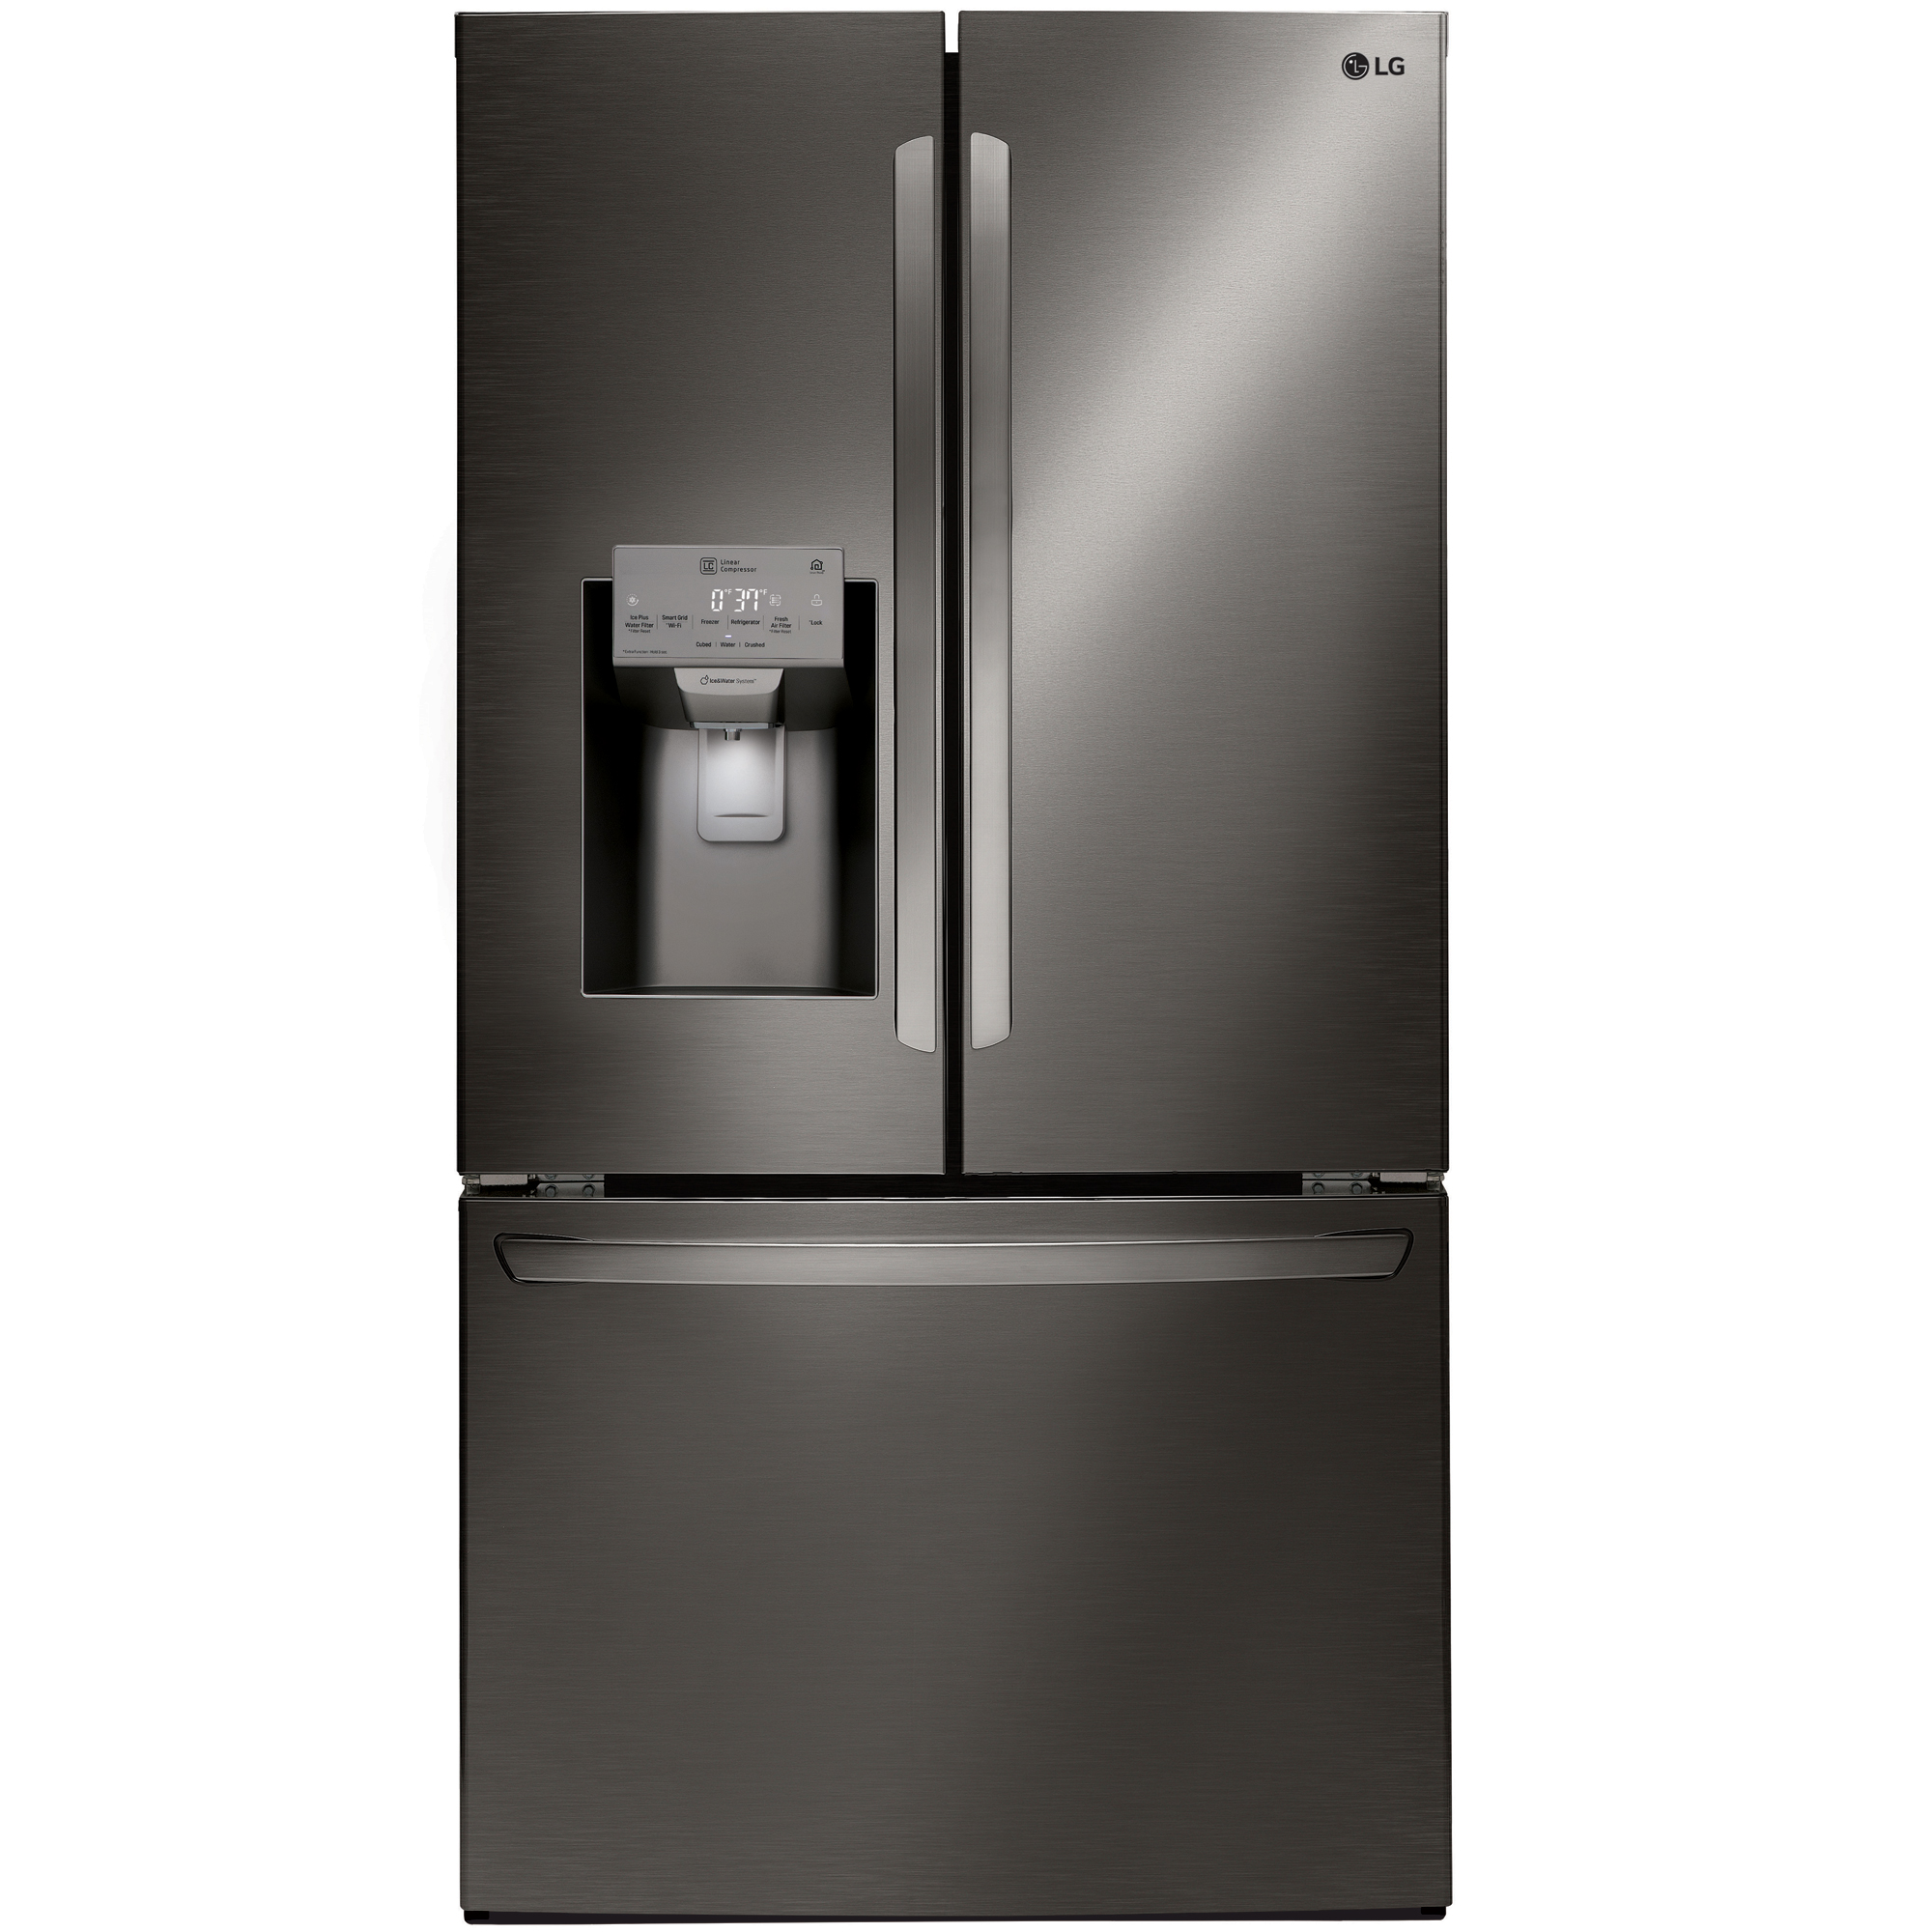 LG LFXS26973D 26.2 cu. ft. Smart WiFi Enabled 3Door French Door Refrigerator Black SS Shop